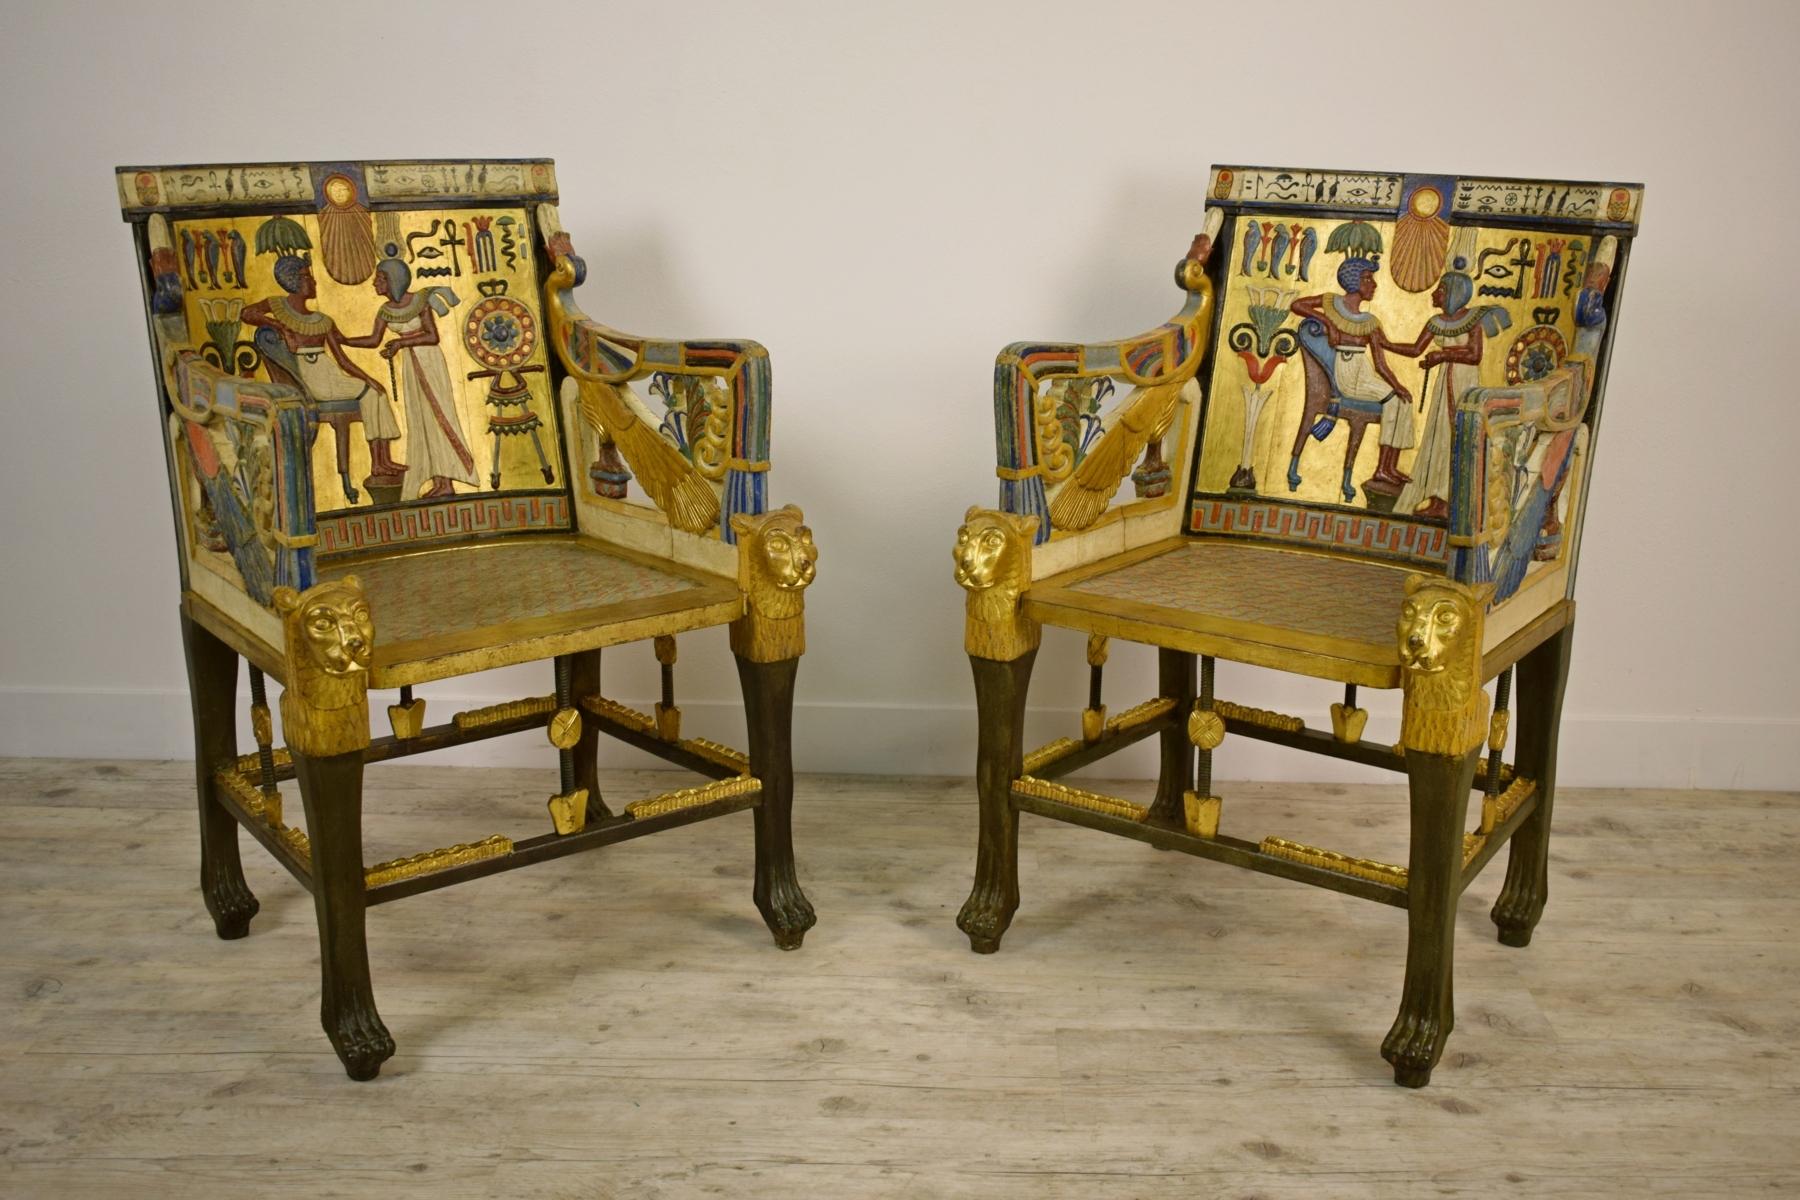 20ème siècle, Paire de fauteuils en bois doré laqué de style néo-égyptien

Cette paire de fauteuils particulière, faite de bois sculpté, laqué et doré, est très lumineuse et décorative. Les fauteuils peuvent être placés dans n'importe quel contexte